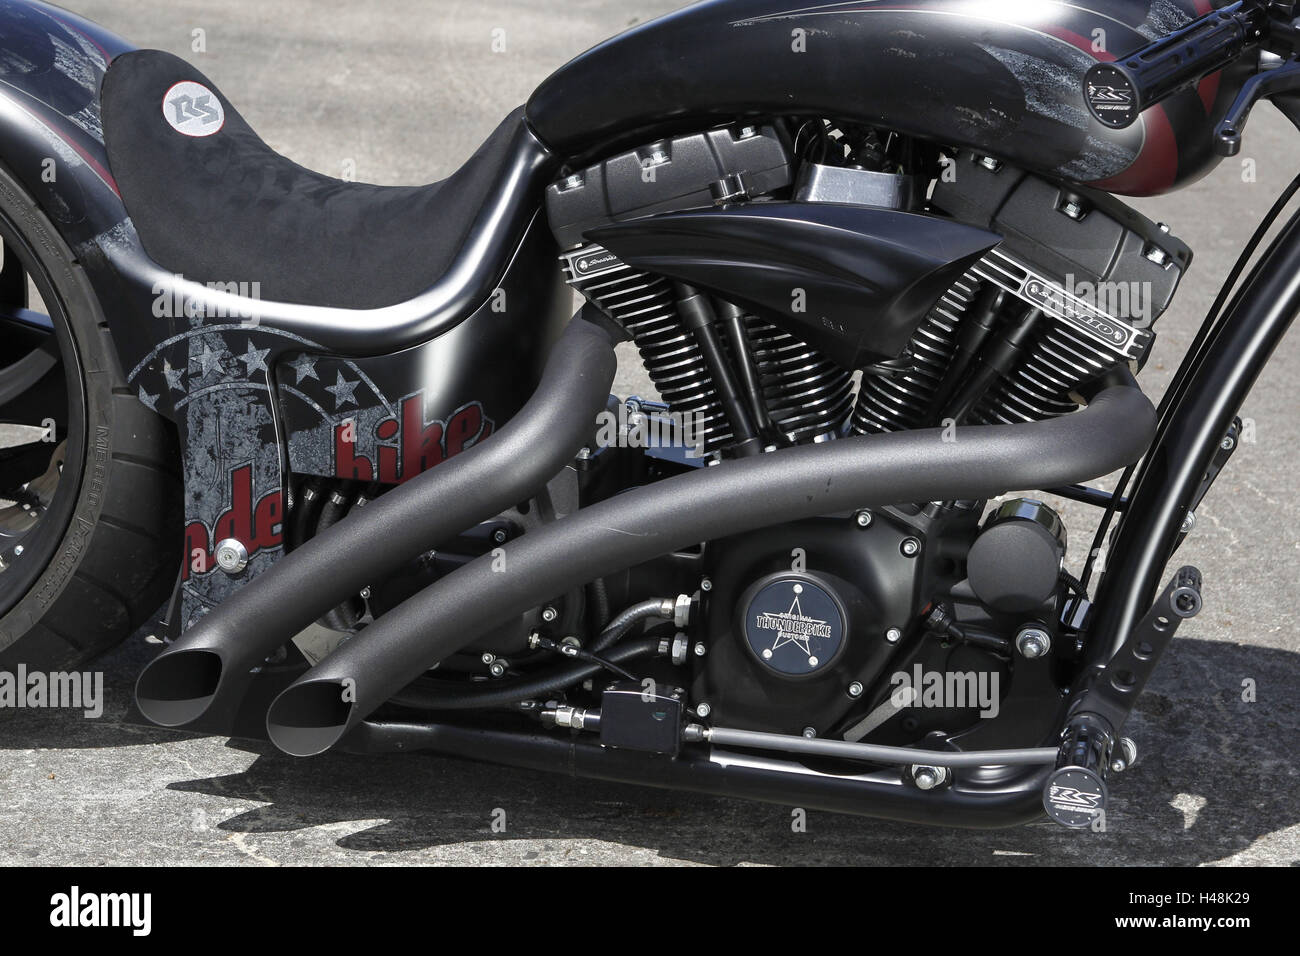 Motorcycle, detail, extreme chopper, Harley Basis, engine, Thunderbike, Stock Photo